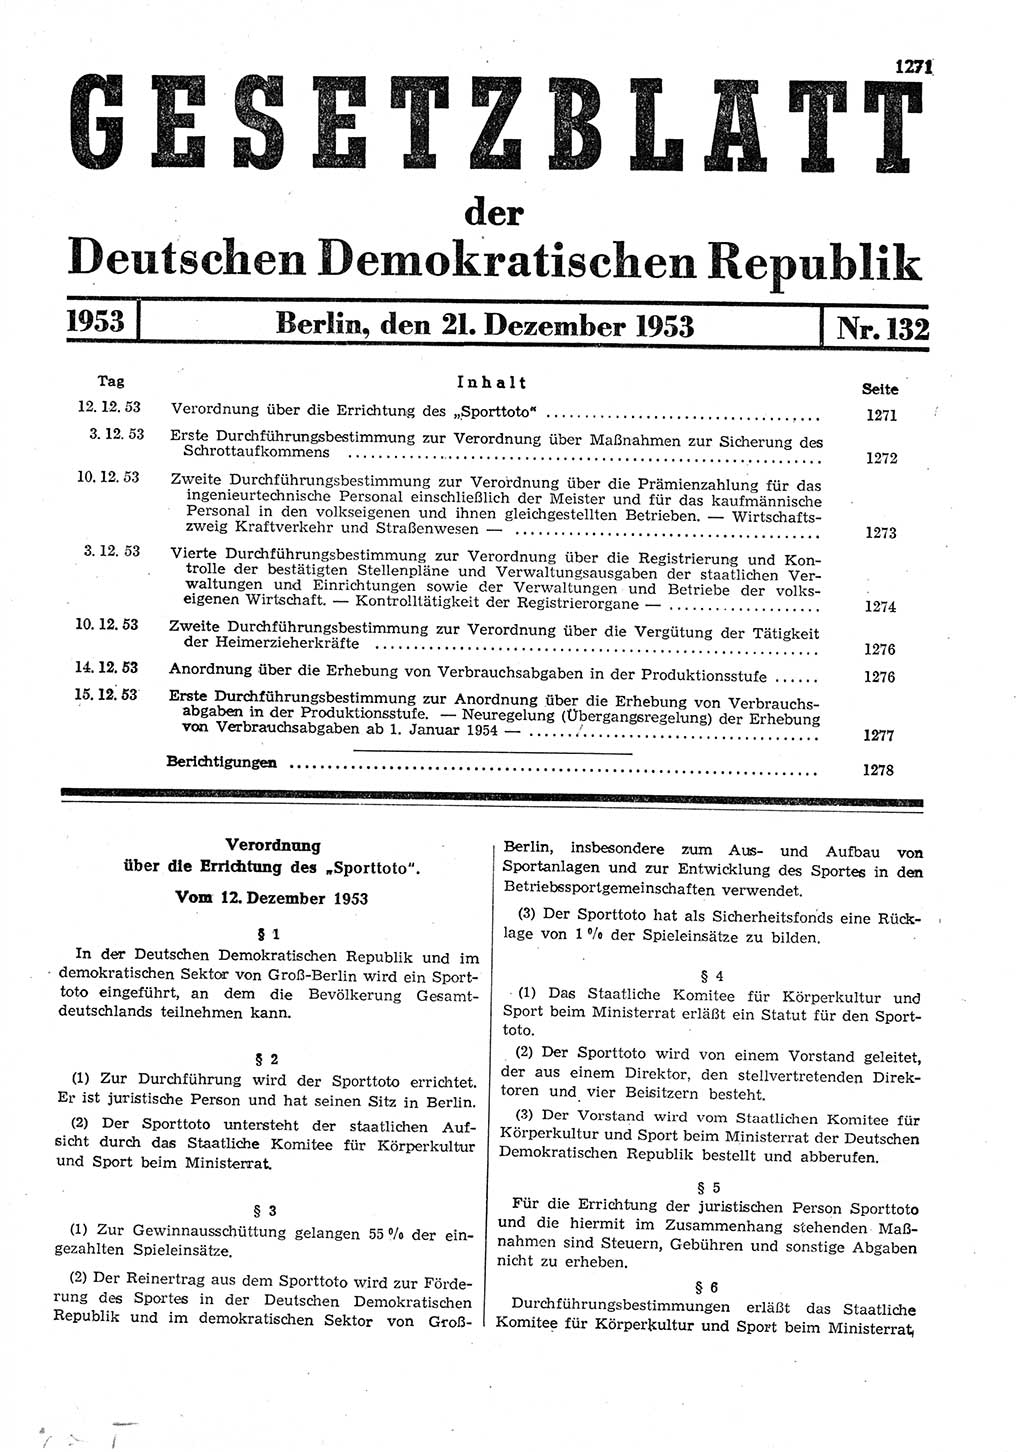 Gesetzblatt (GBl.) der Deutschen Demokratischen Republik (DDR) 1953, Seite 1271 (GBl. DDR 1953, S. 1271)